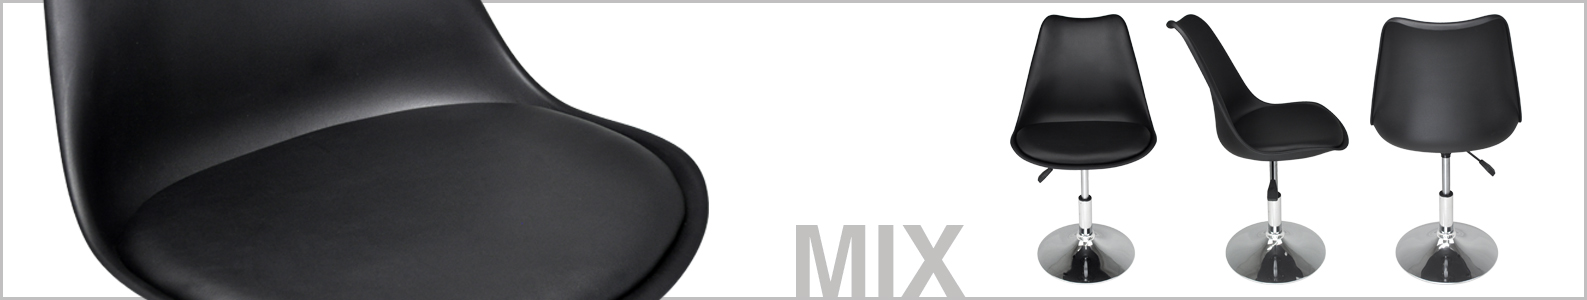 Sedia girevole con altezza regolabile mod. MIX Mix